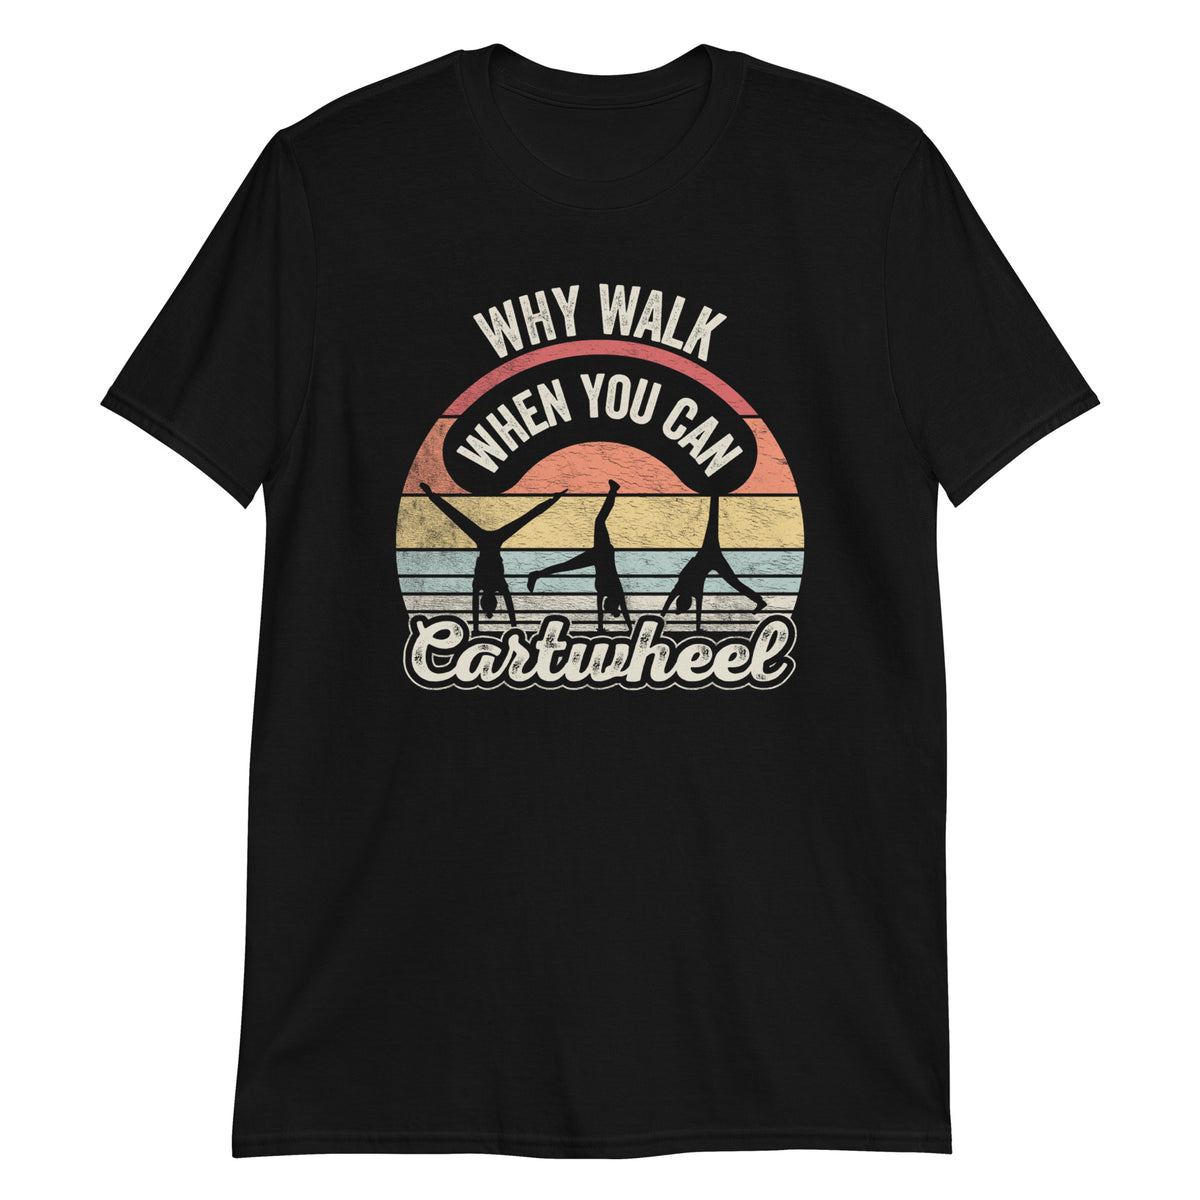 Why Walk When You Can Cartwheel T-Shirt